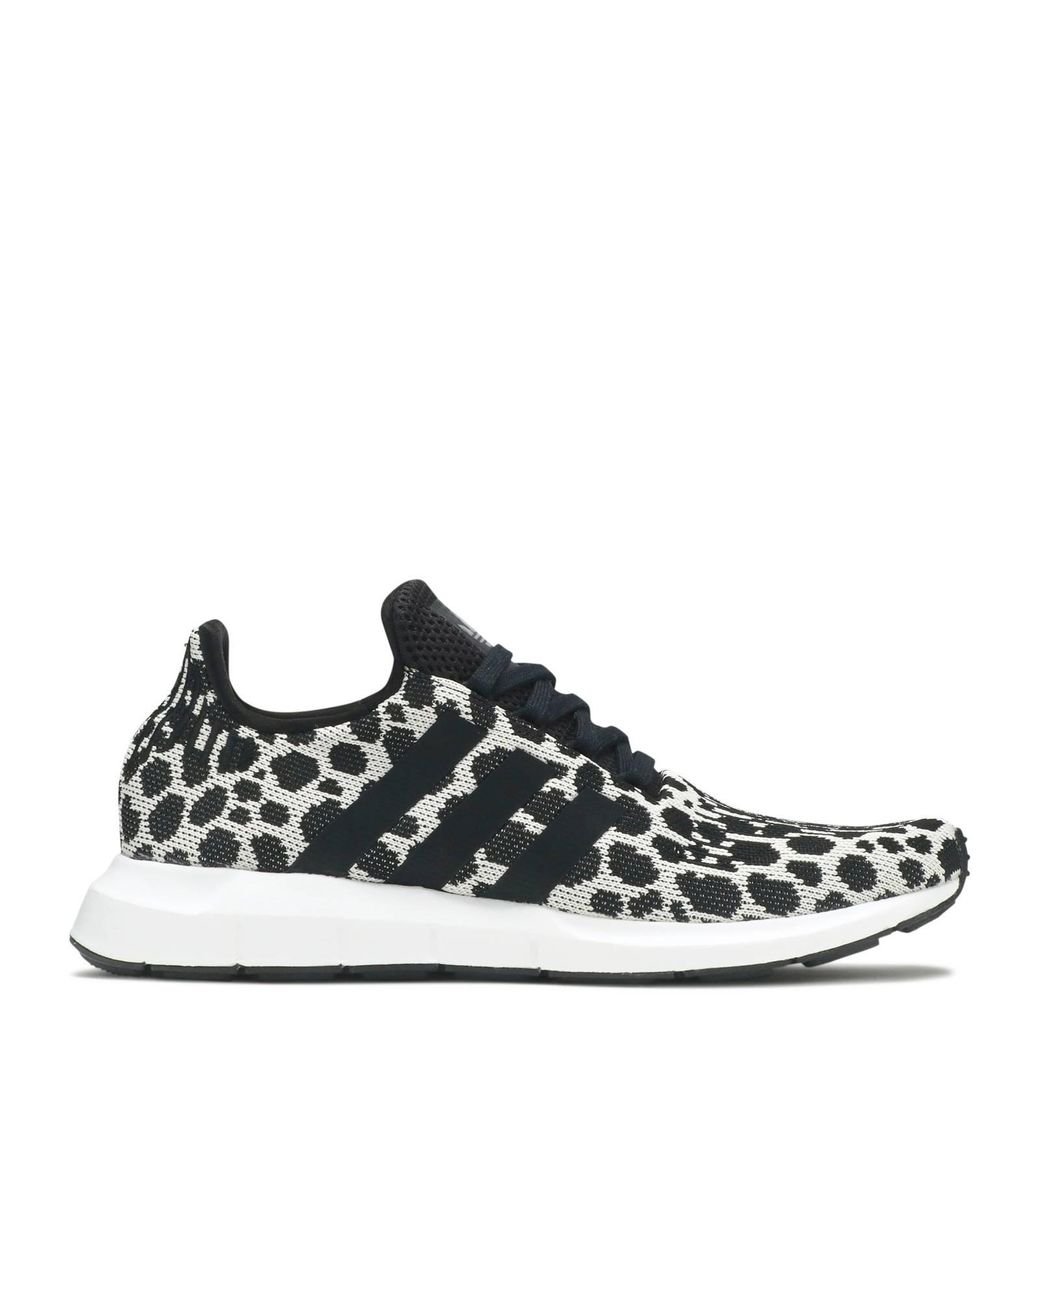 adidas swift run leopard sneaker